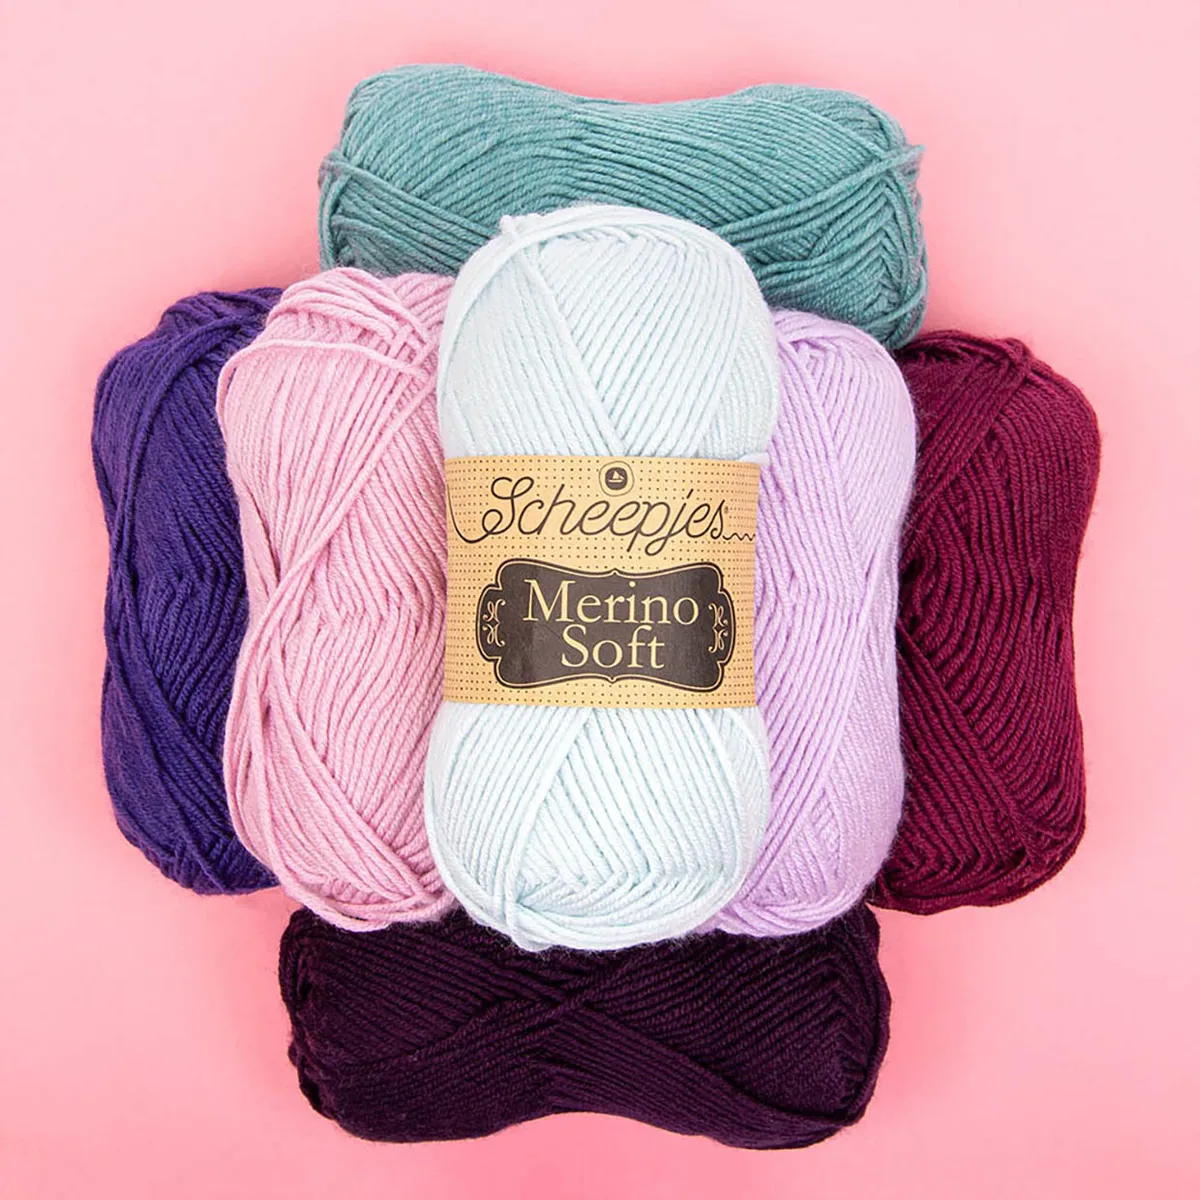 Scheepjes Merino Soft yarn